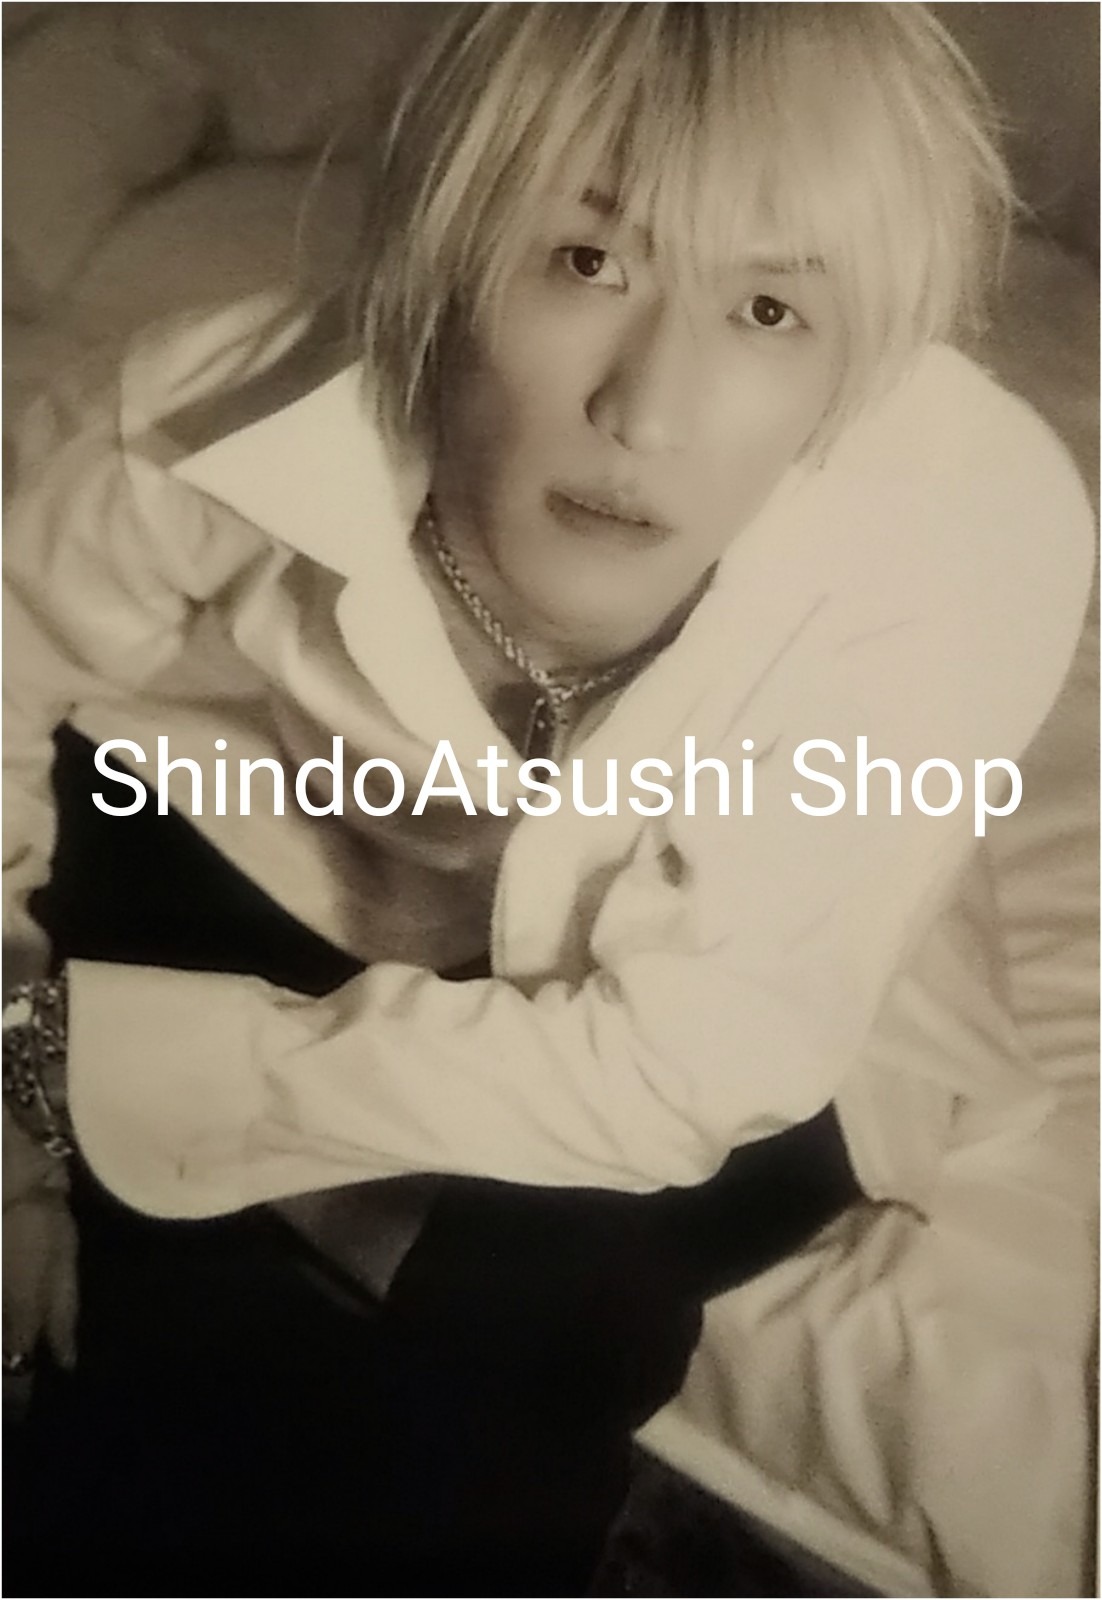 ShindoAtsushi Shop